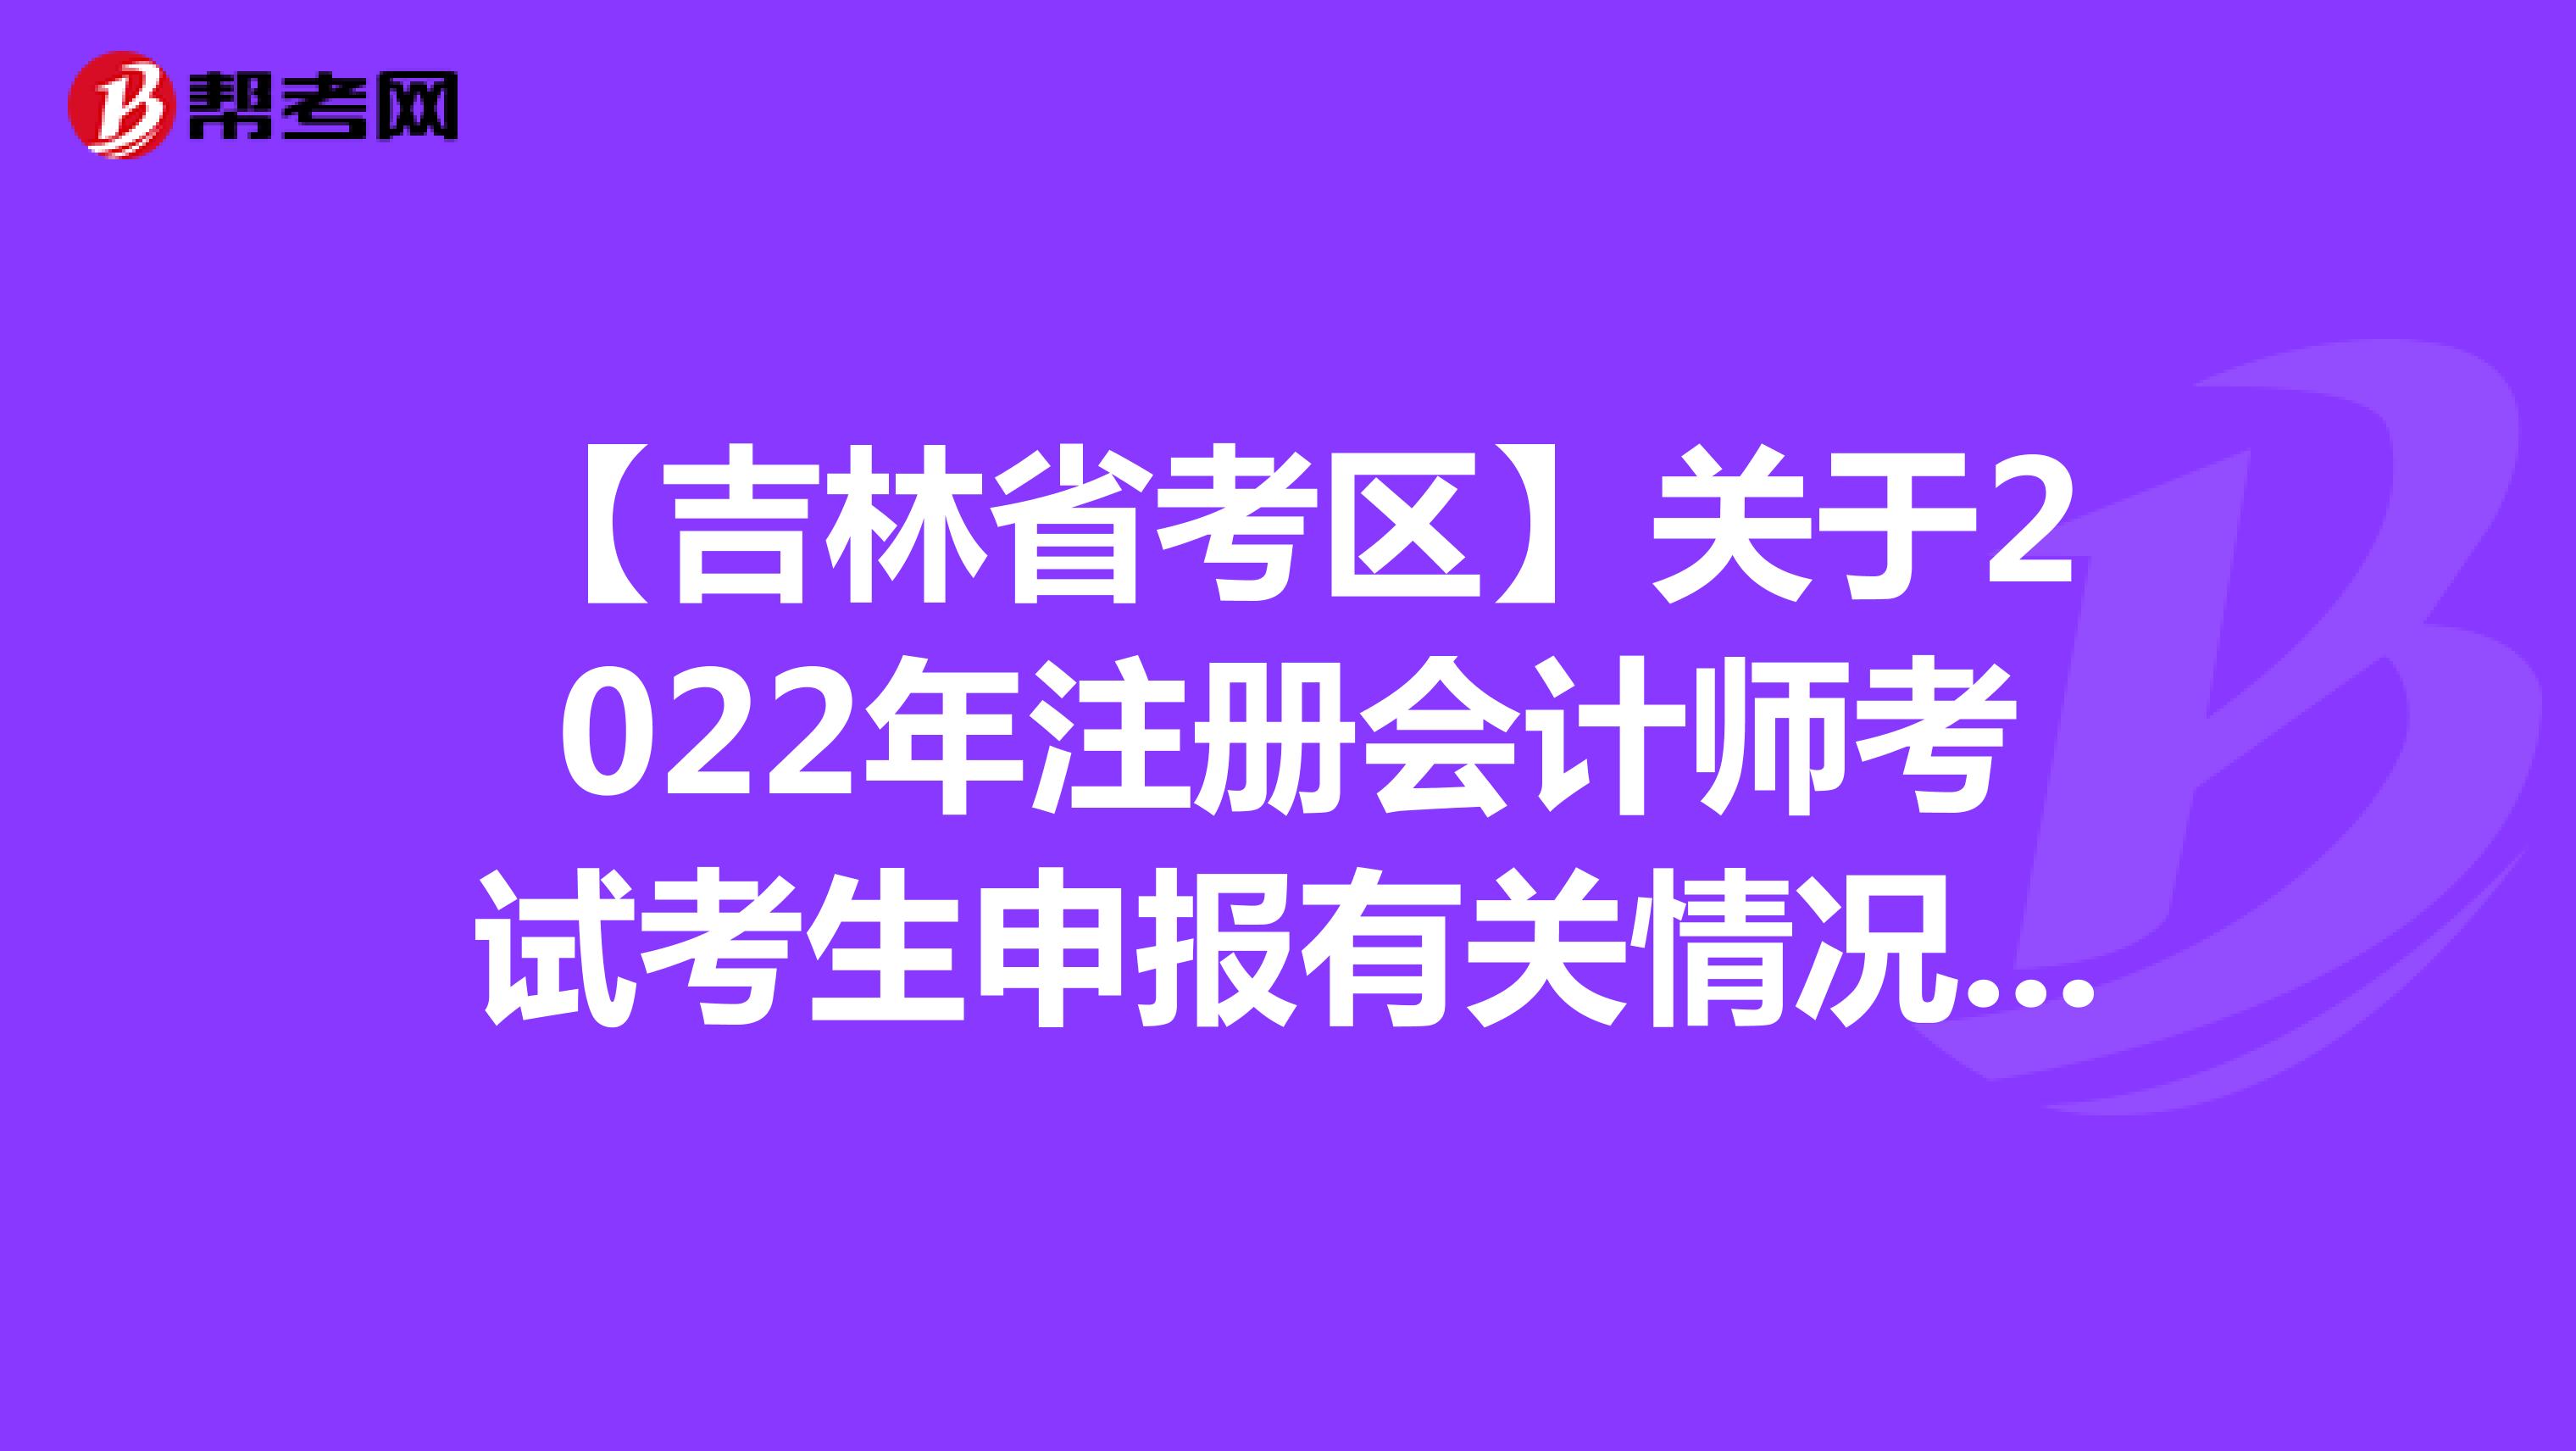 【吉林省考区】关于2022年注册会计师考试考生申报有关情况的通知